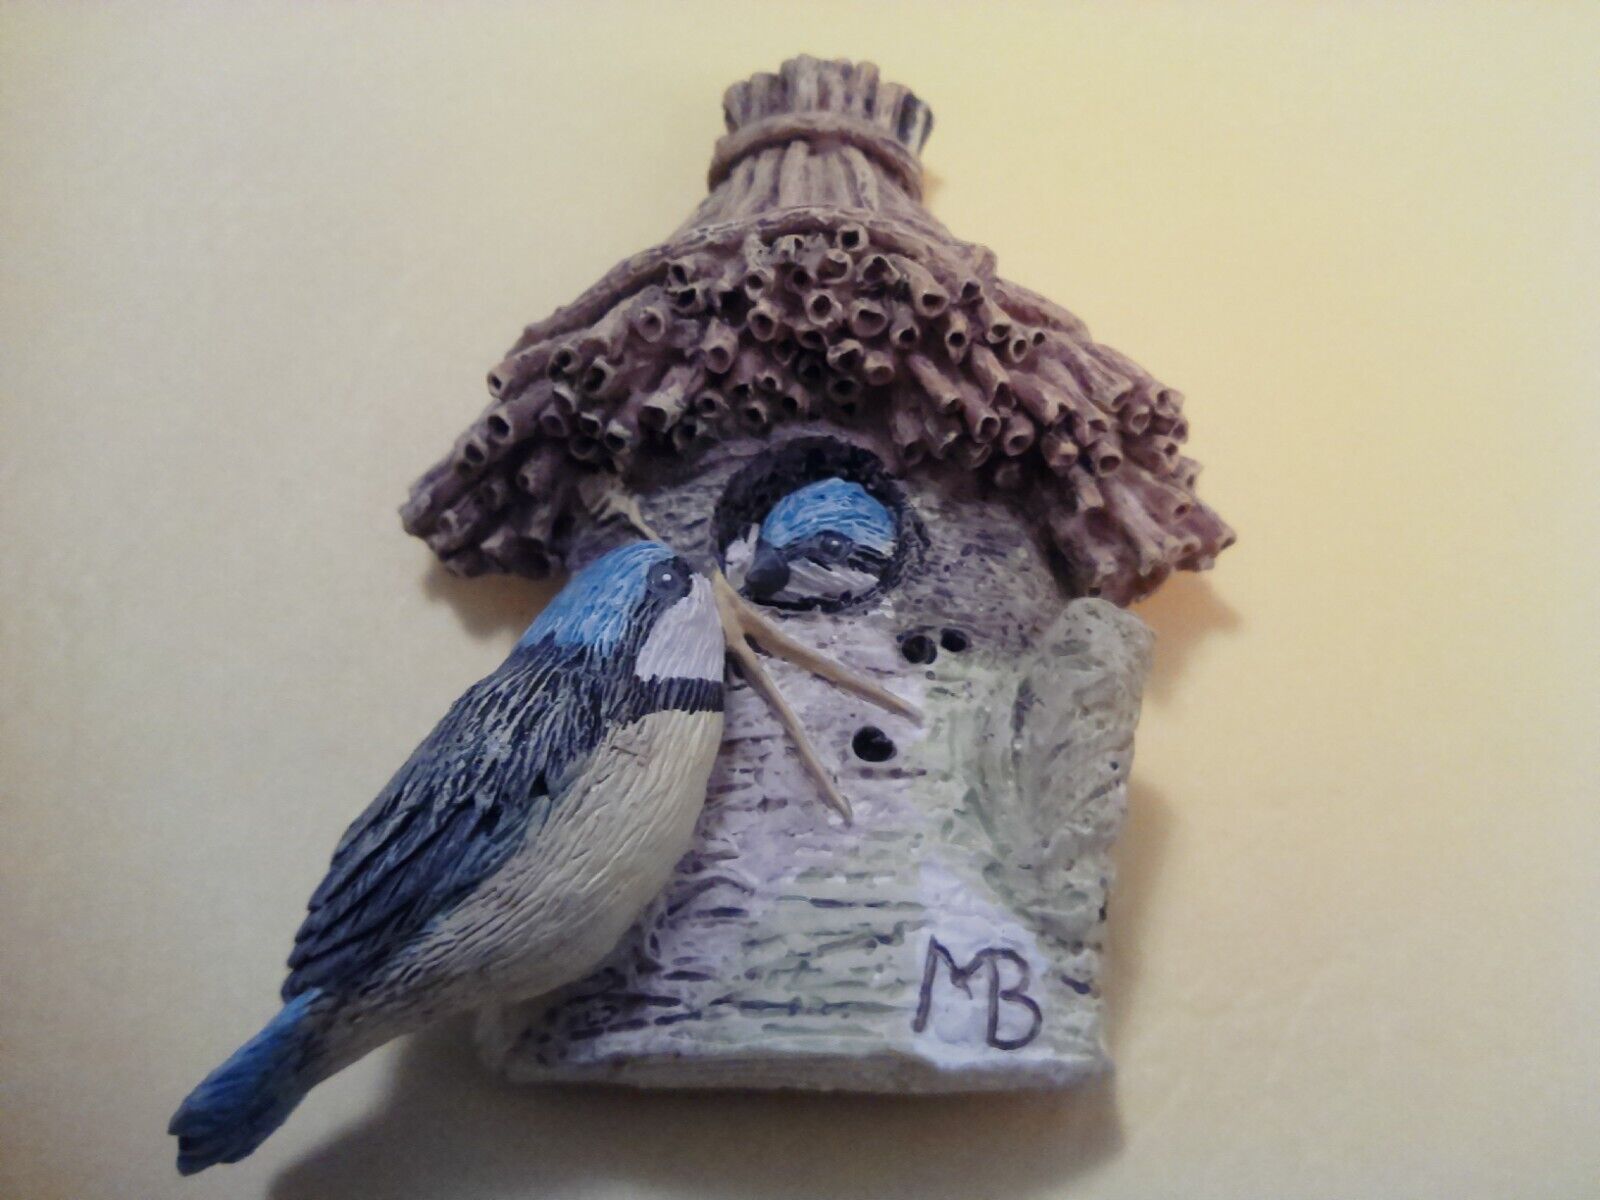 1999 Marjolein Bastin bird house with blue bird magnet